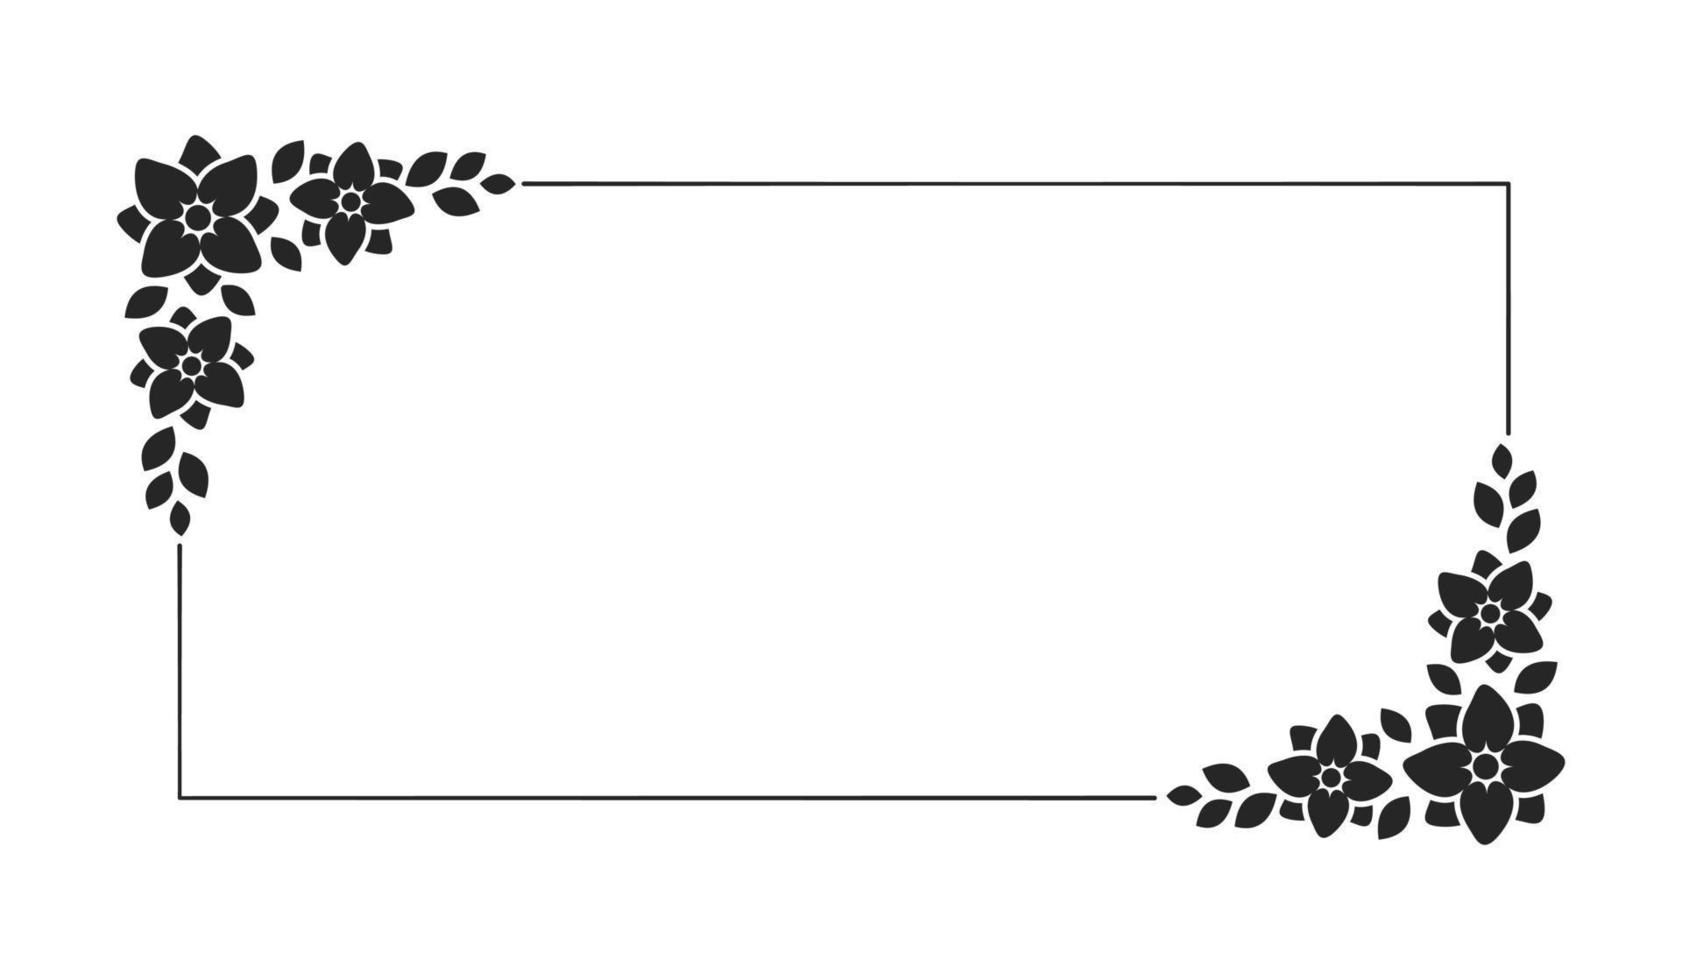 floral botanique Cadre modèle. rectangulaire frontière avec vigne et main tiré fleur modèle. vecteur illustration avec espace pour texte.